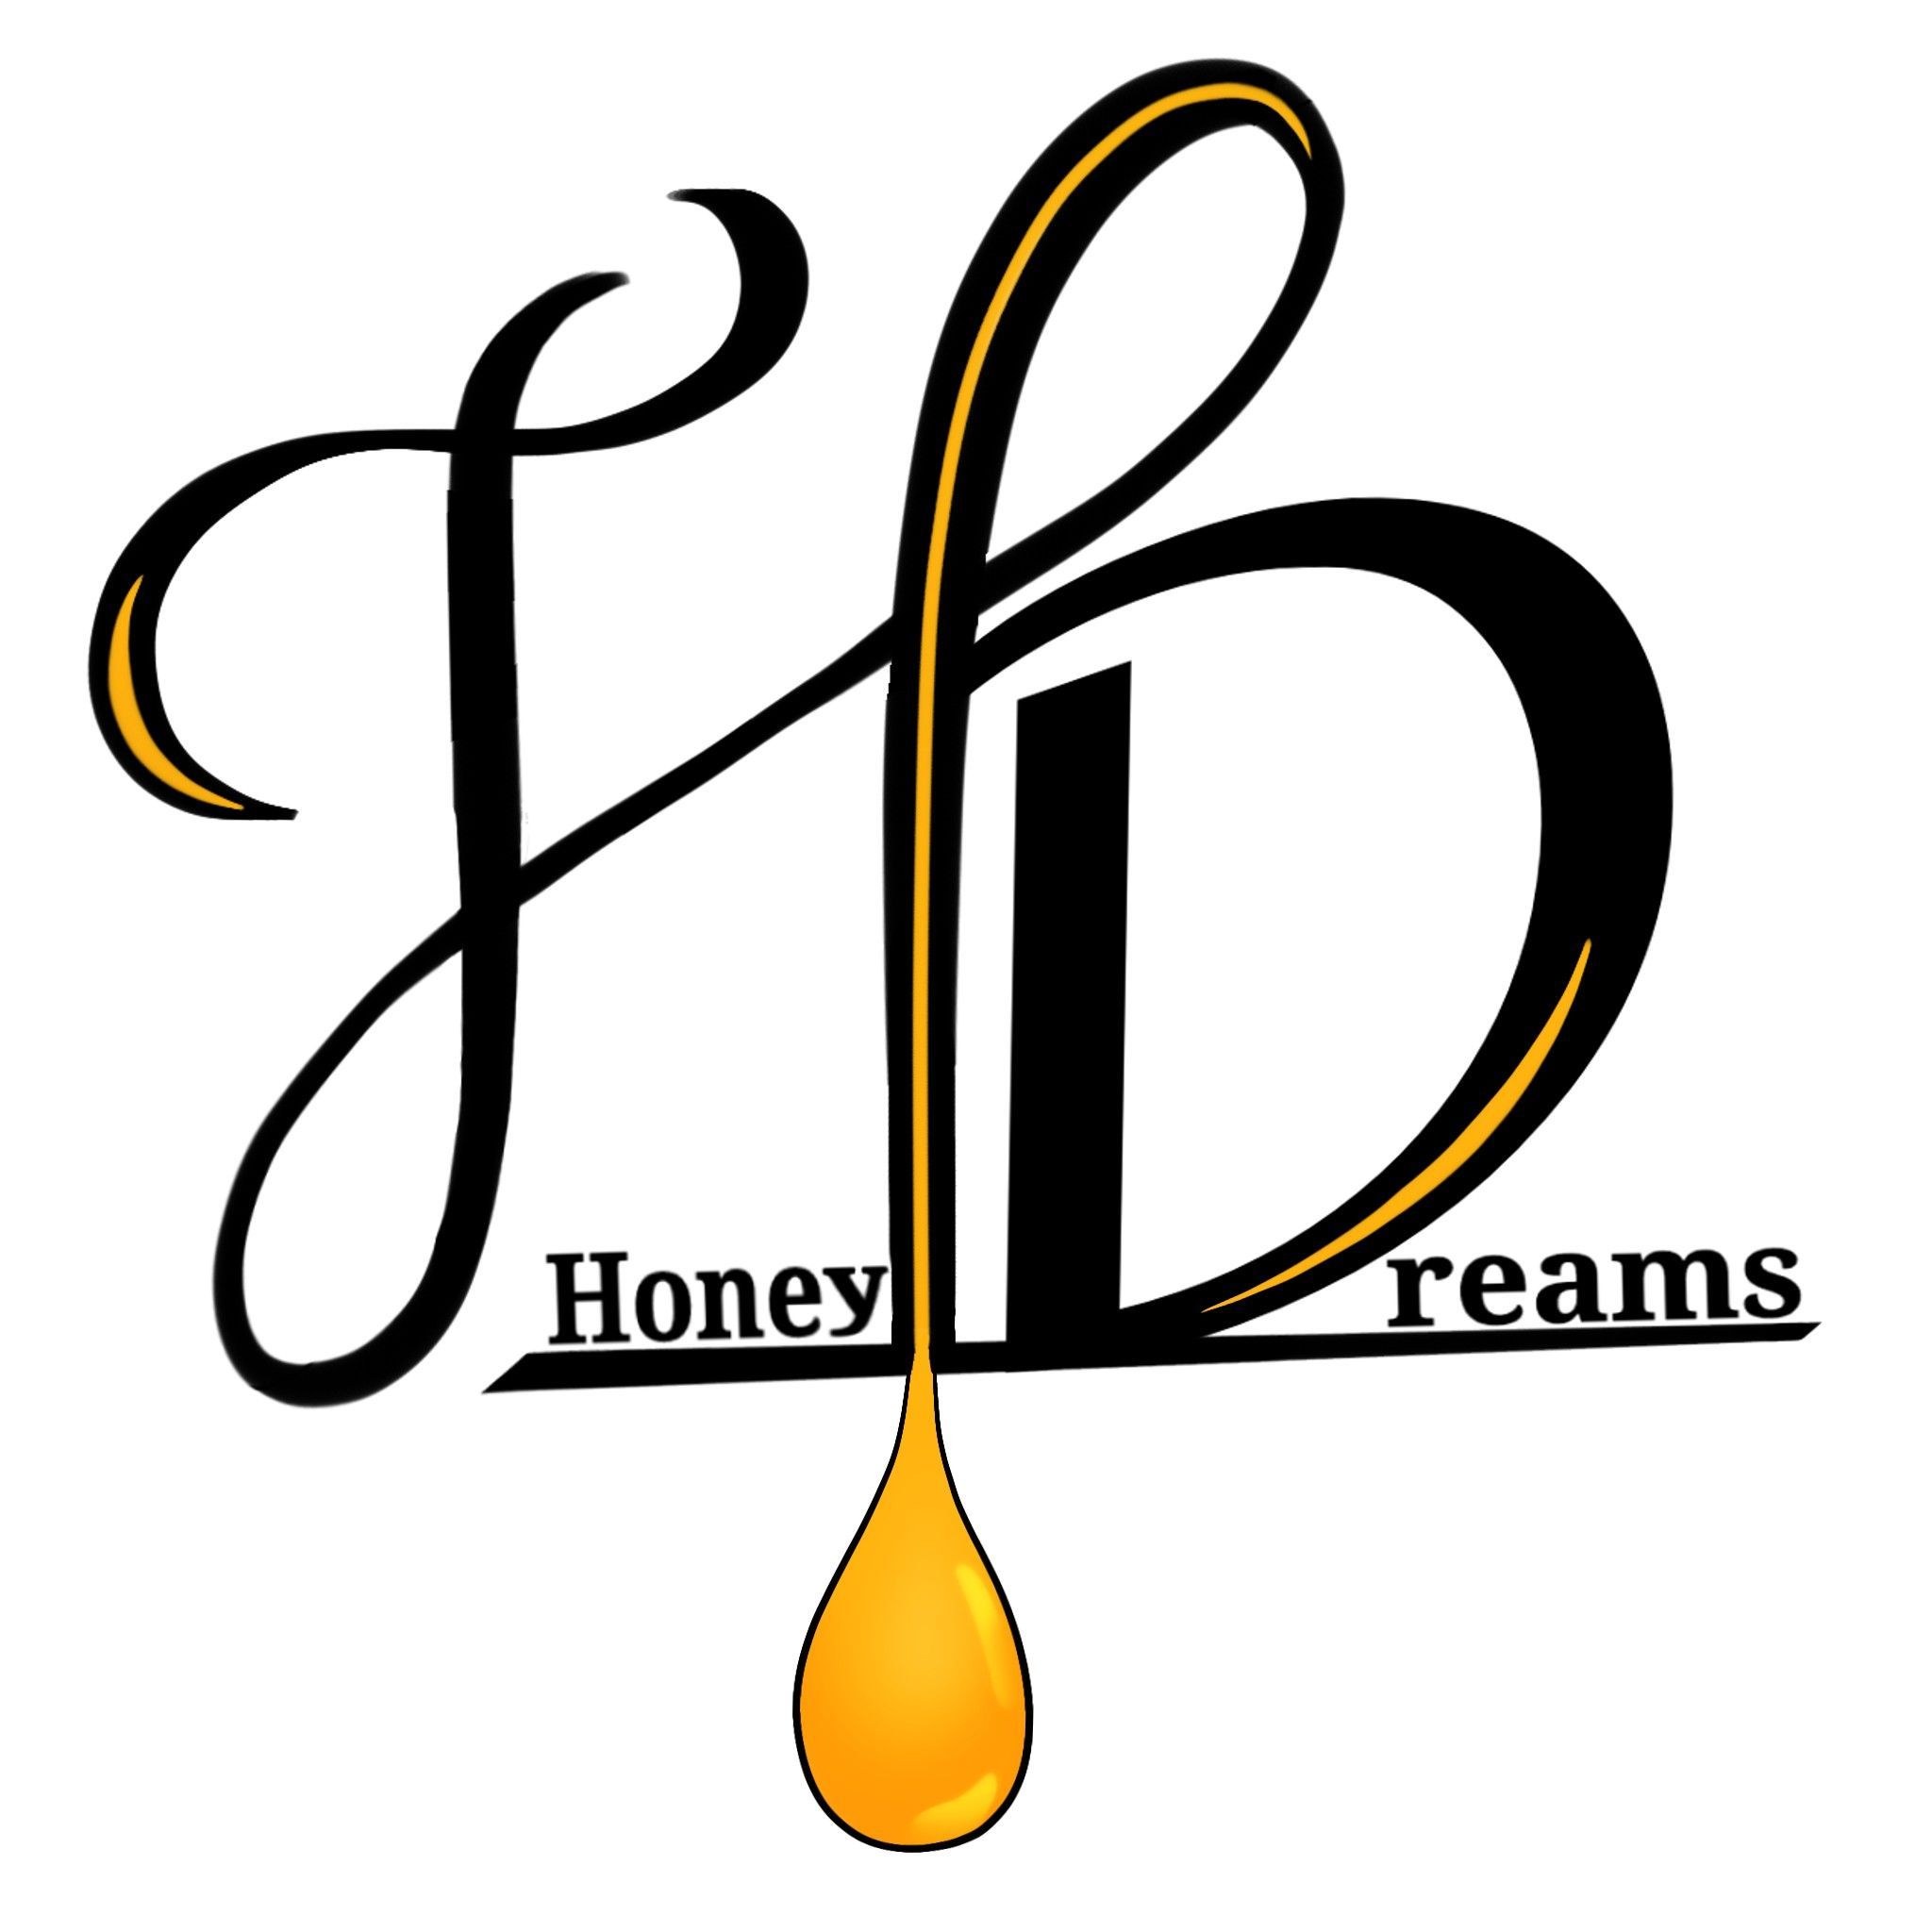 Beauty Lab Honey Dreams, 6640 Van Nyus Blvd Room 205, Van Nyus, 205, Los Angeles, Van Nuys 91405